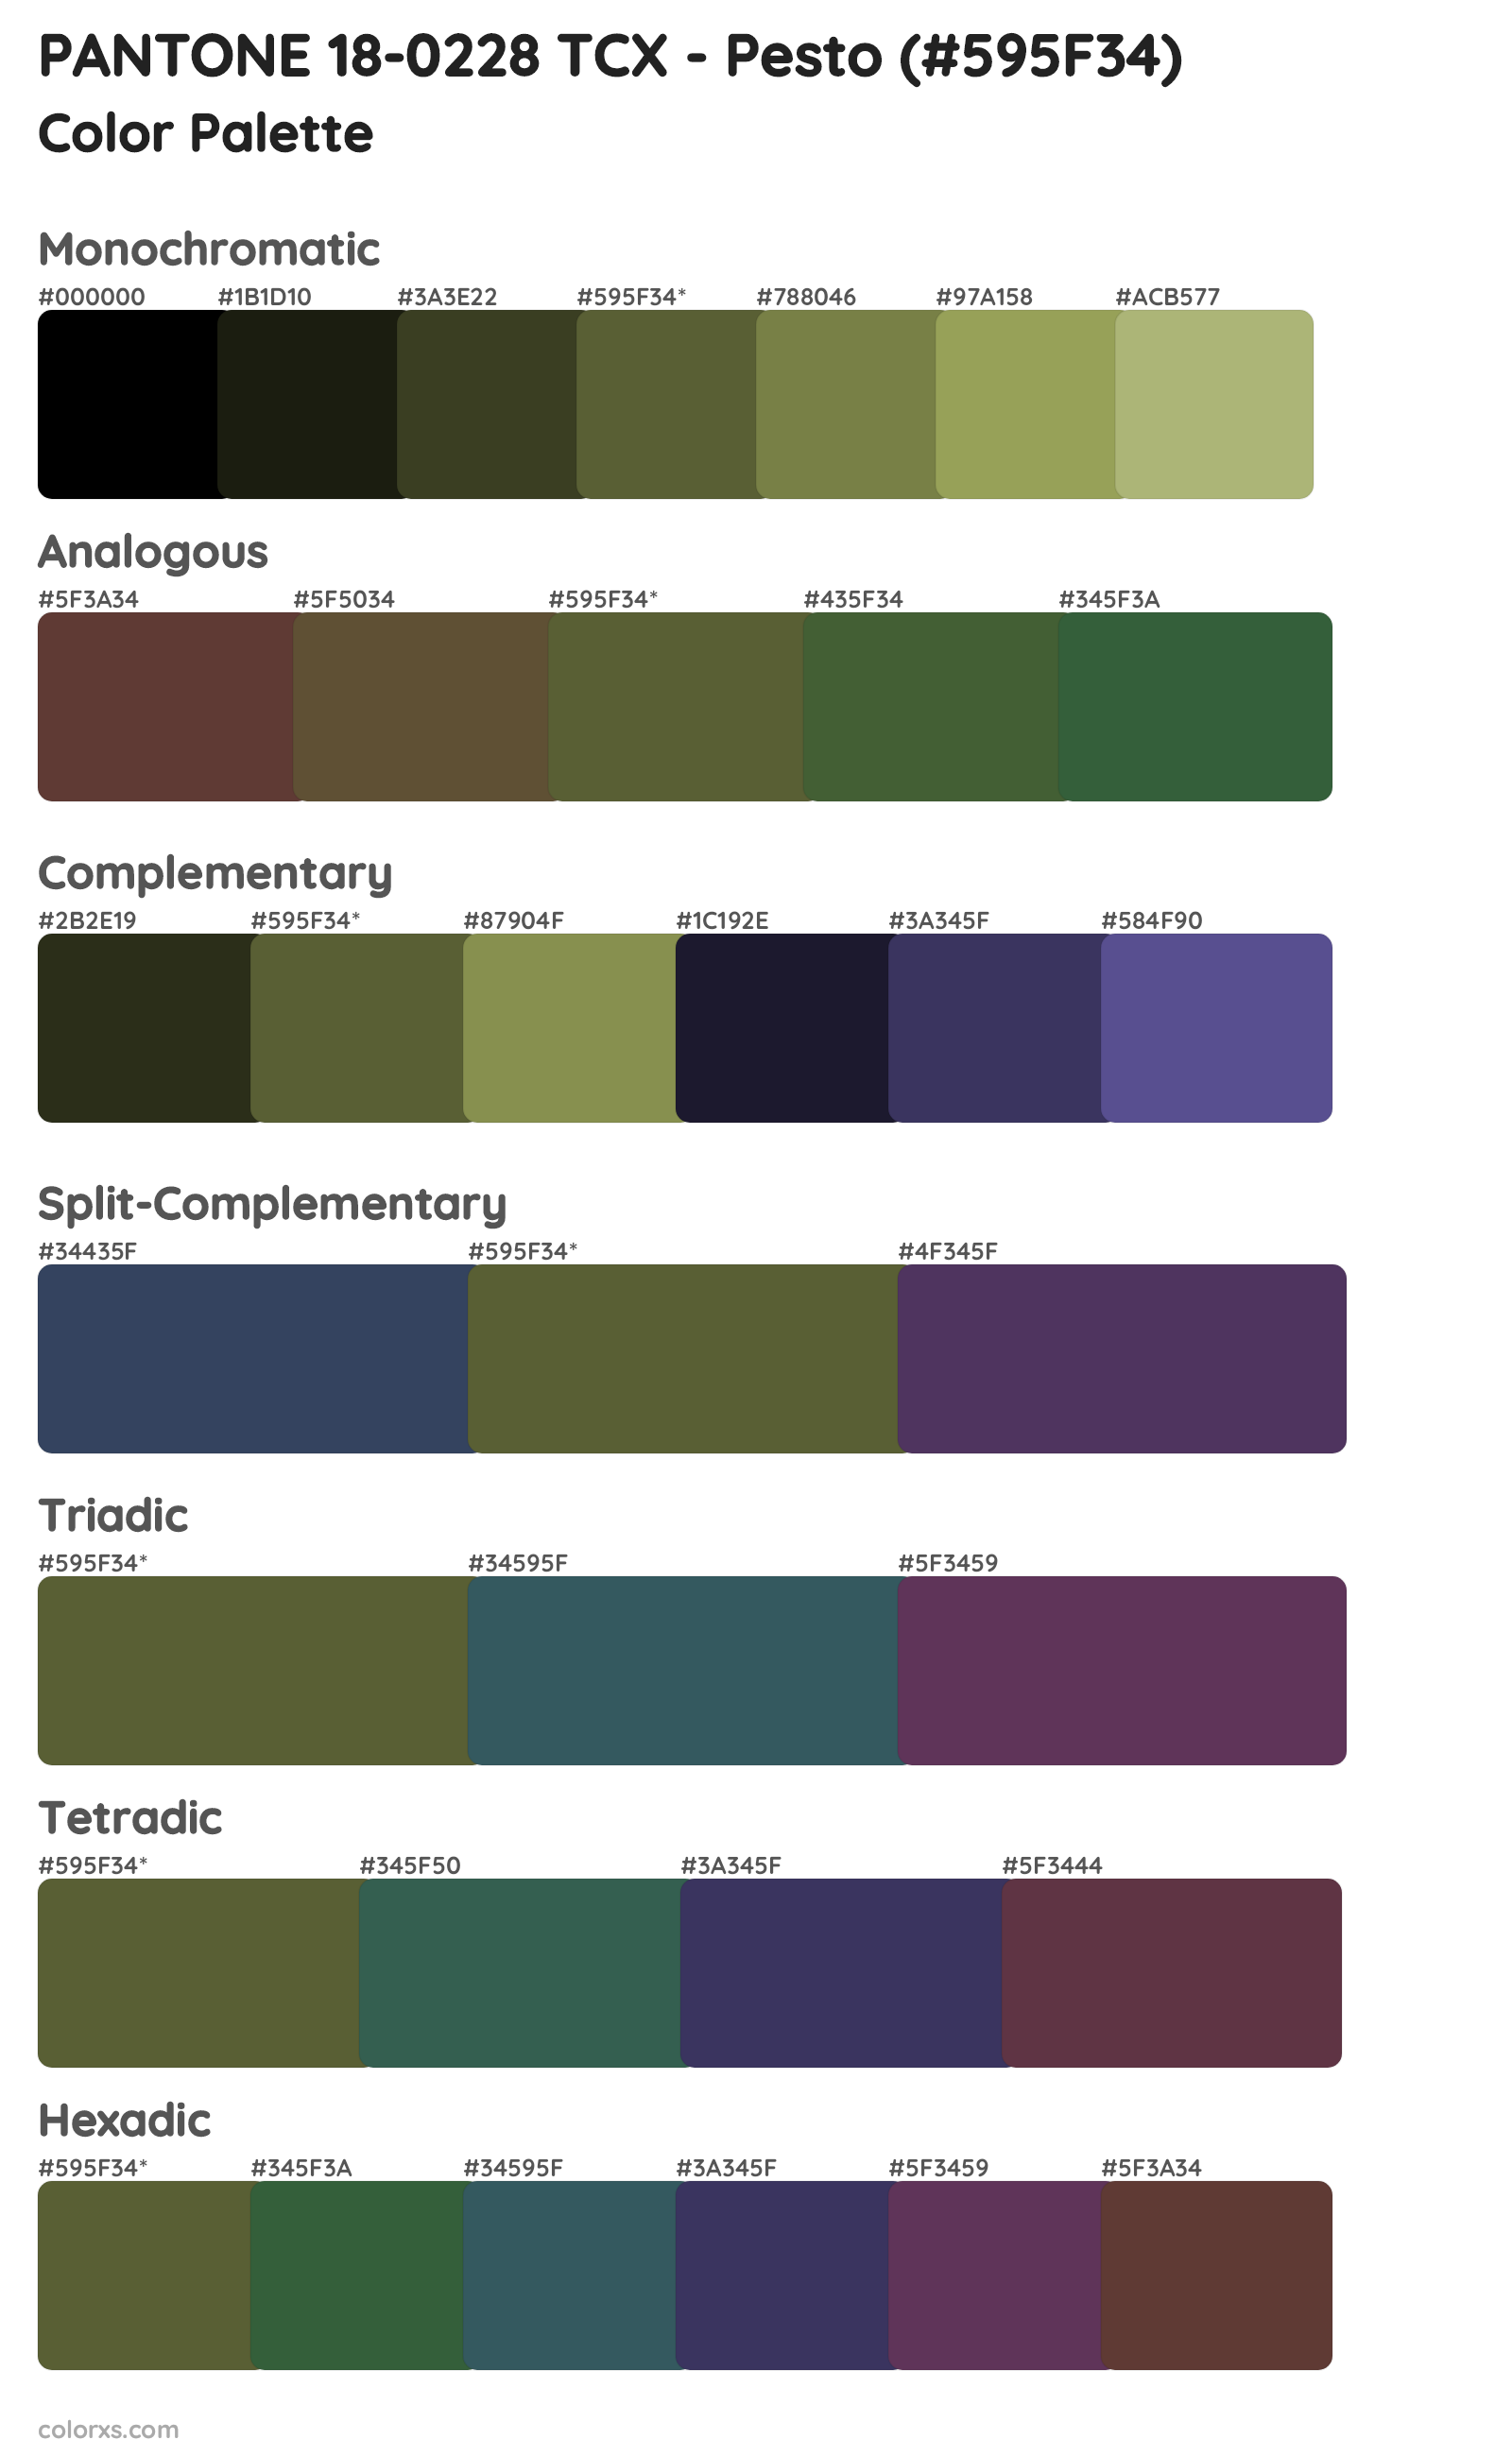 PANTONE 18-0228 TCX - Pesto Color Scheme Palettes